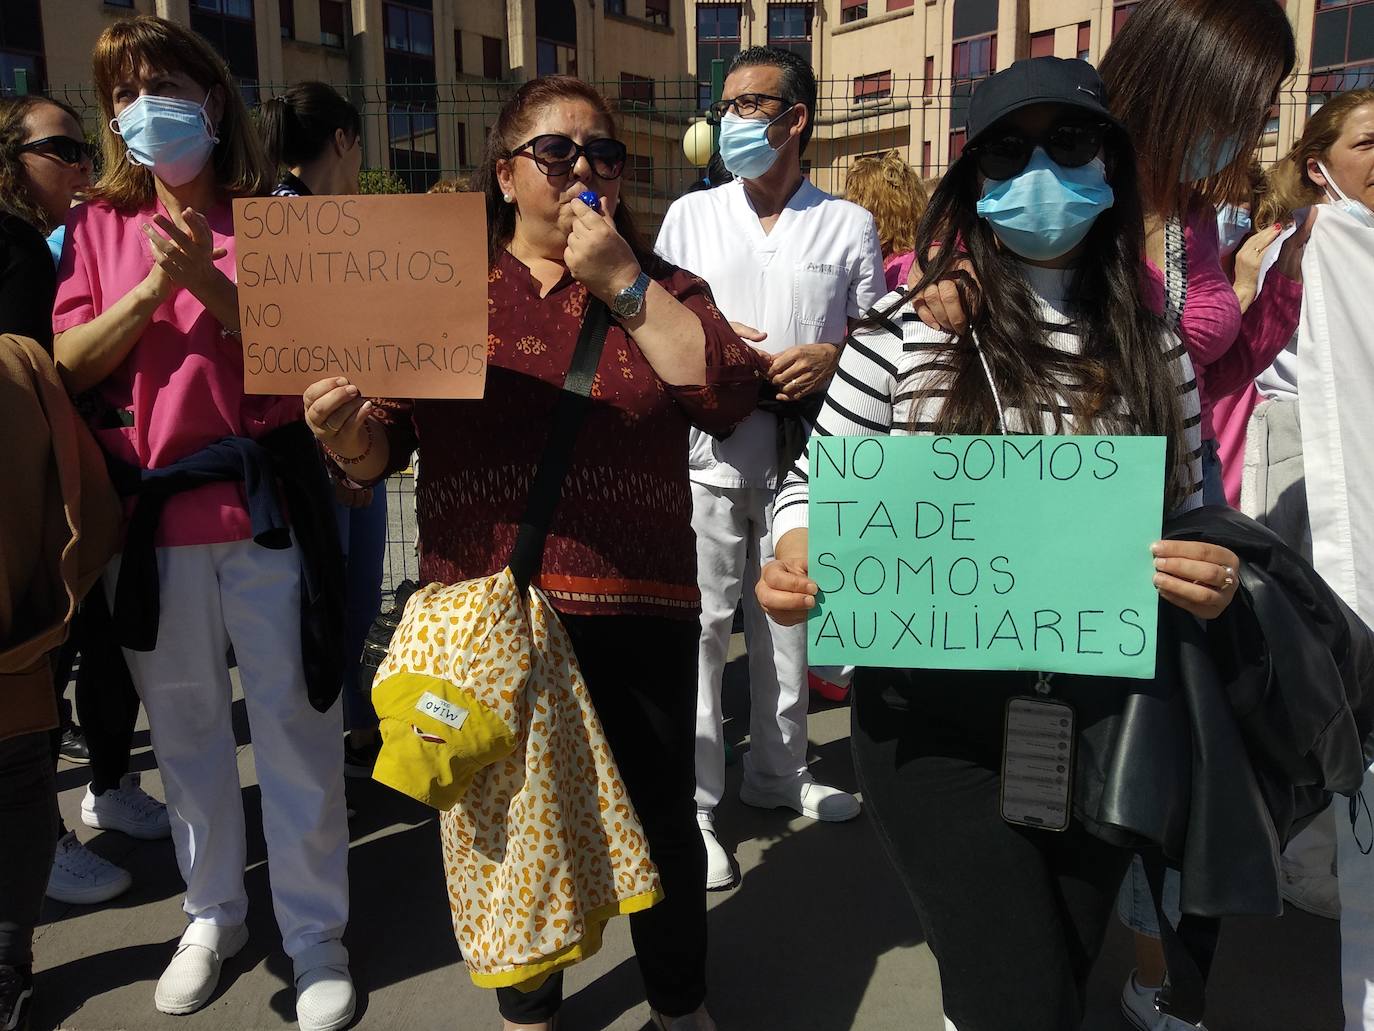 Protesta de los auxiliares de enfermería en Ponferrada